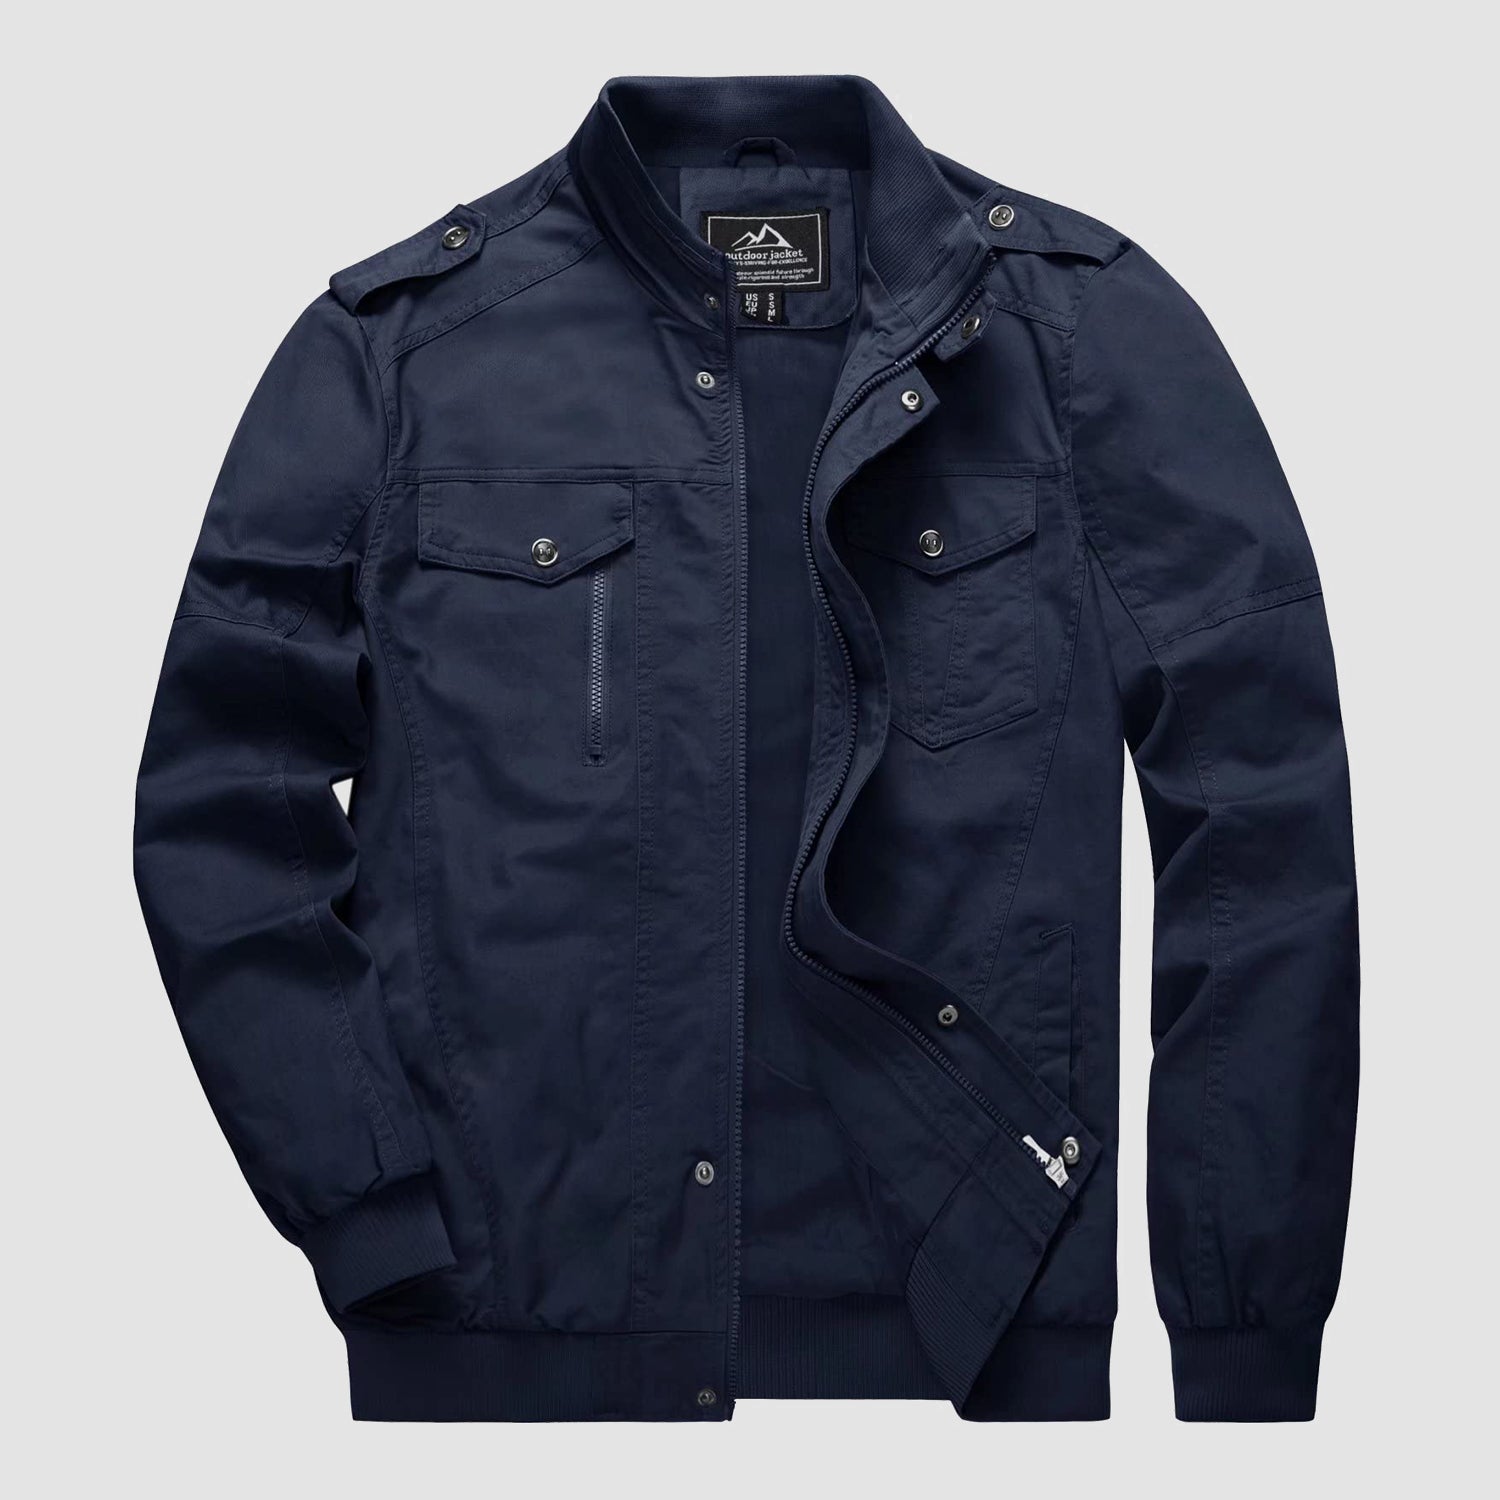 Men's Cotton Cargo Jacket Windbreaker Tactical Jacket, Navy / M